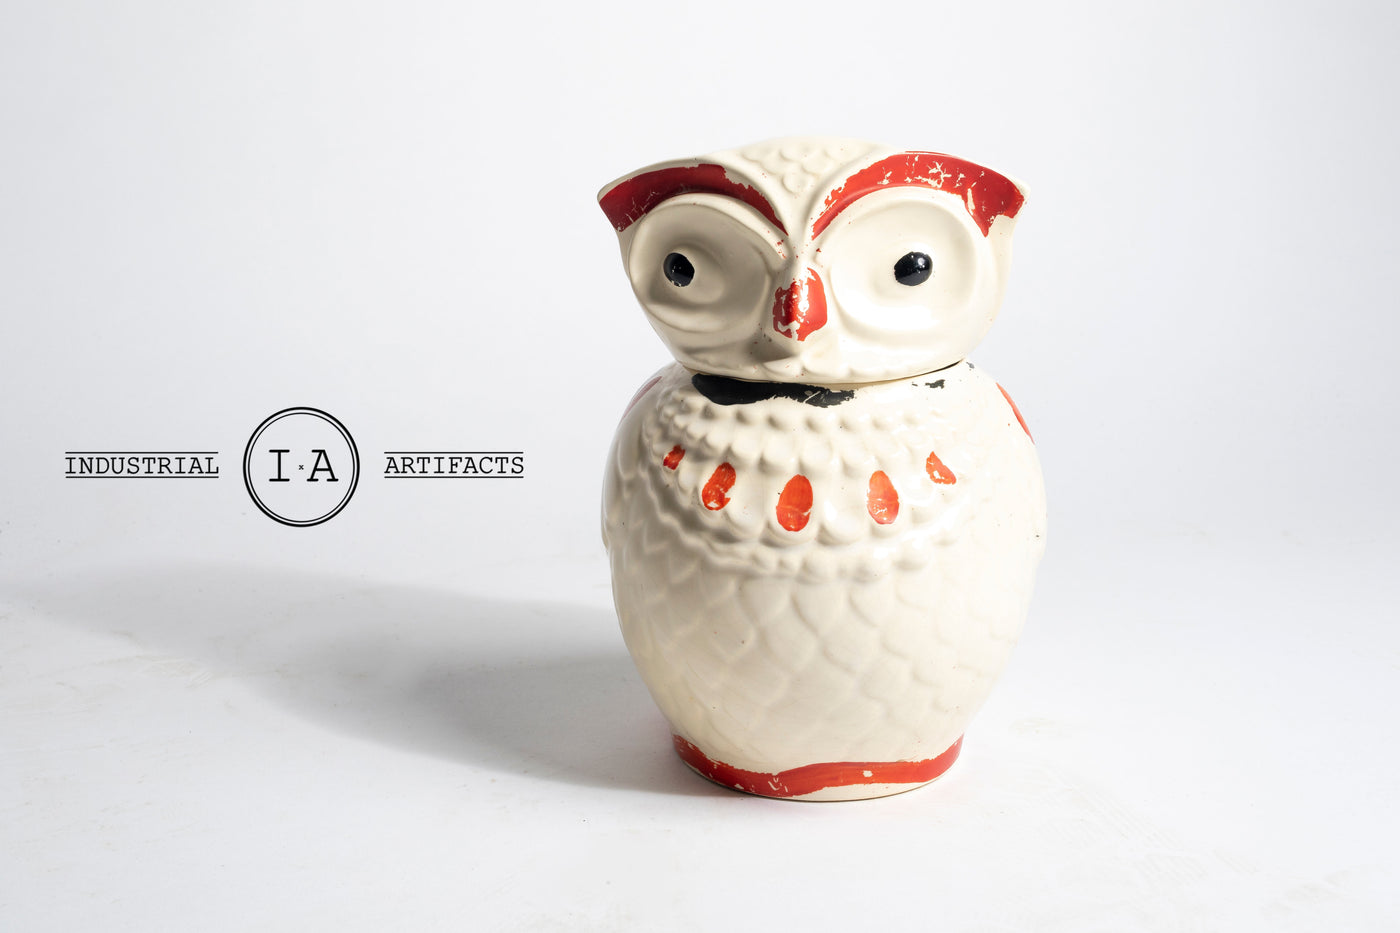 Vintage Hand Painted Bisque Owl Ceramic Cookie Jar